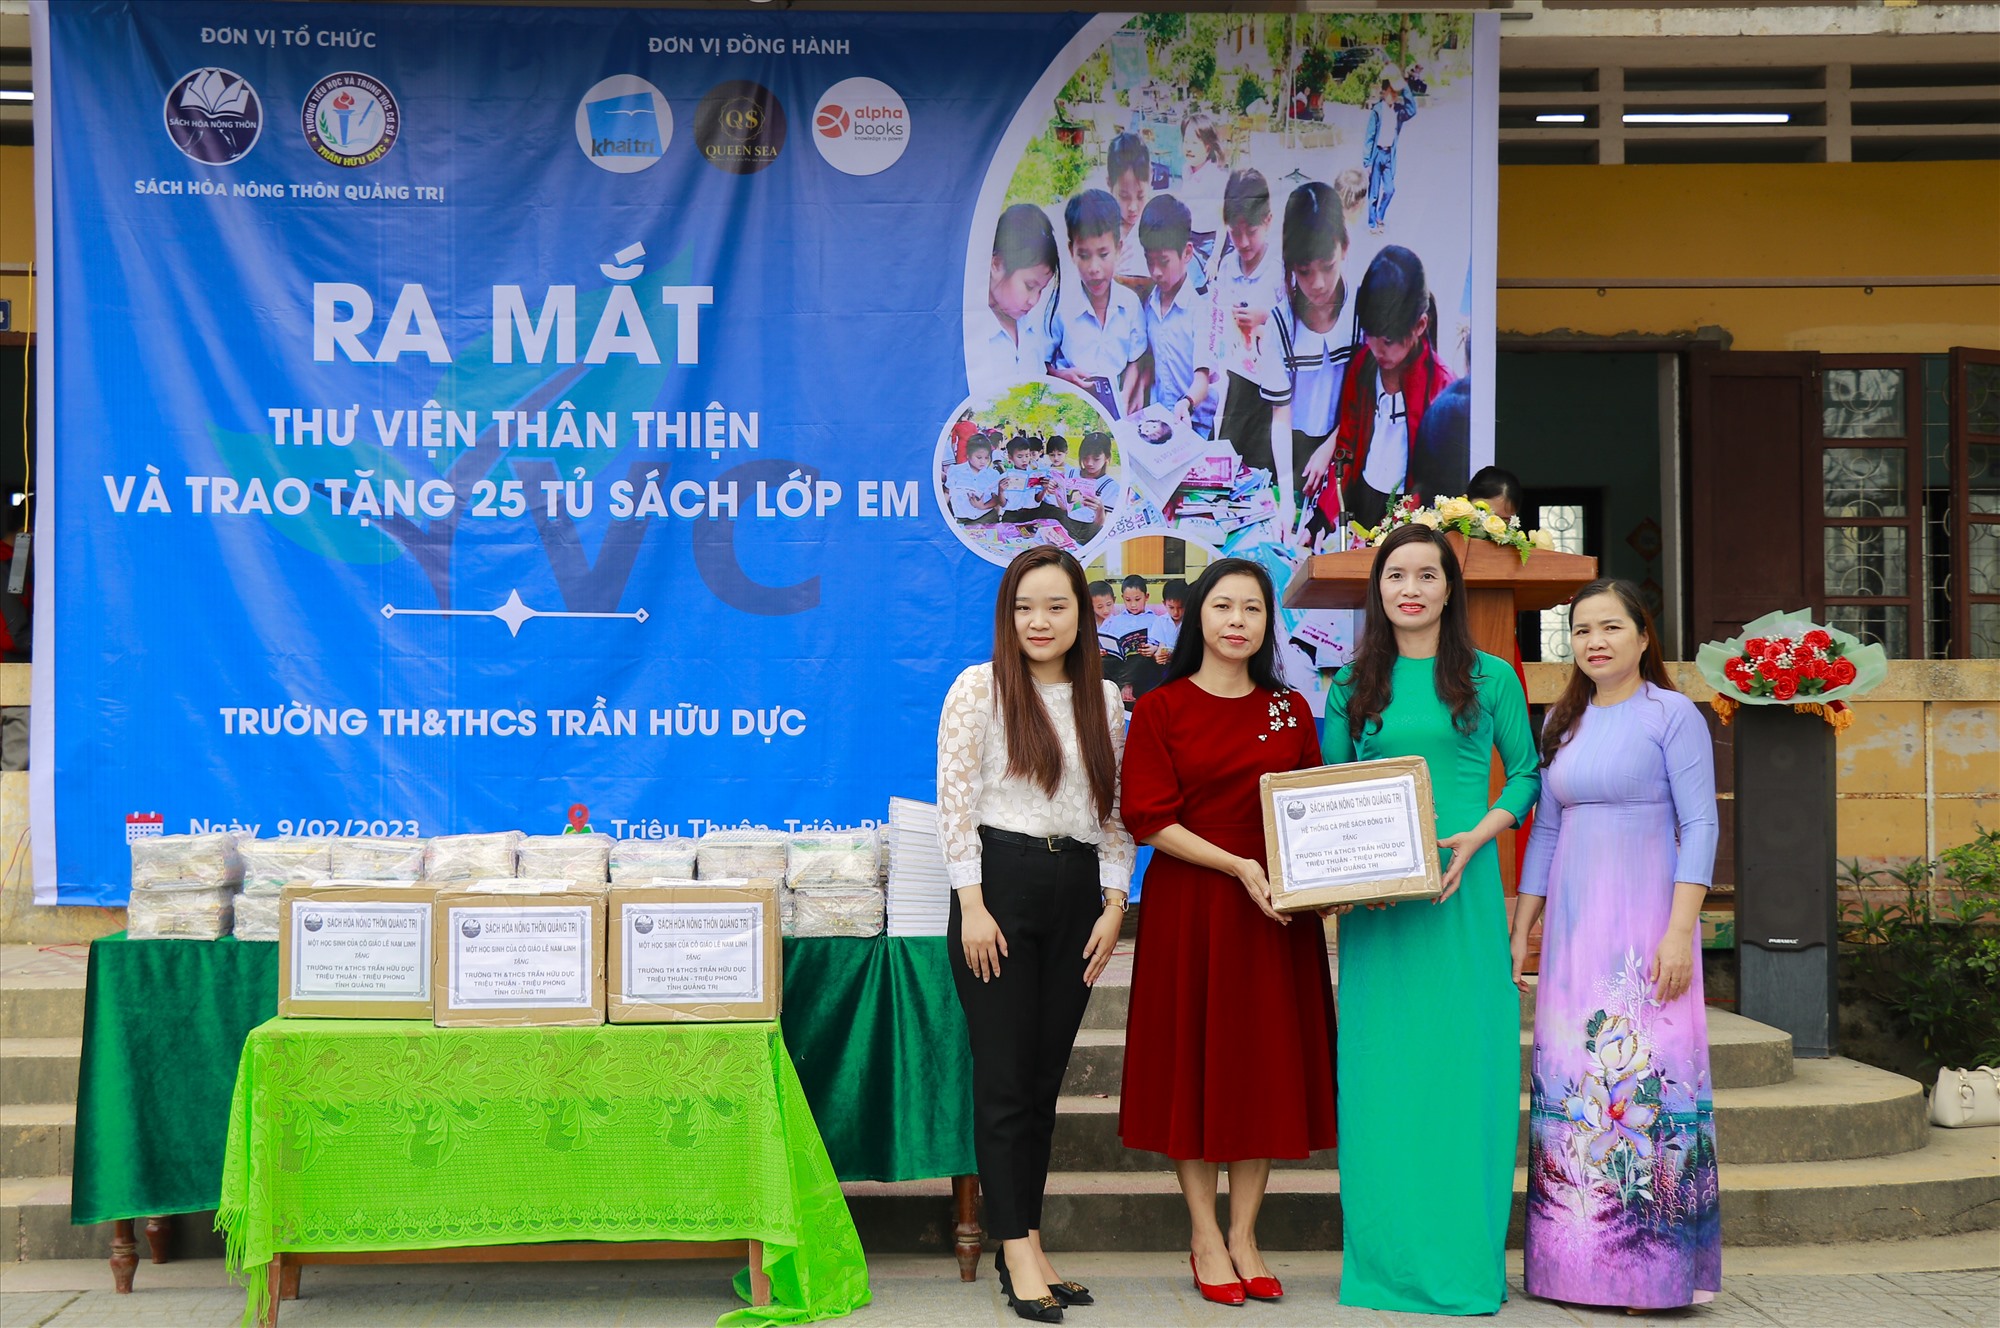 Đại diện Câu lạc bộ Sách hoá Nông thôn Quảng Trị trao sách cho lãnh đạo Trường TH & THCS Trần Hữu Dực.